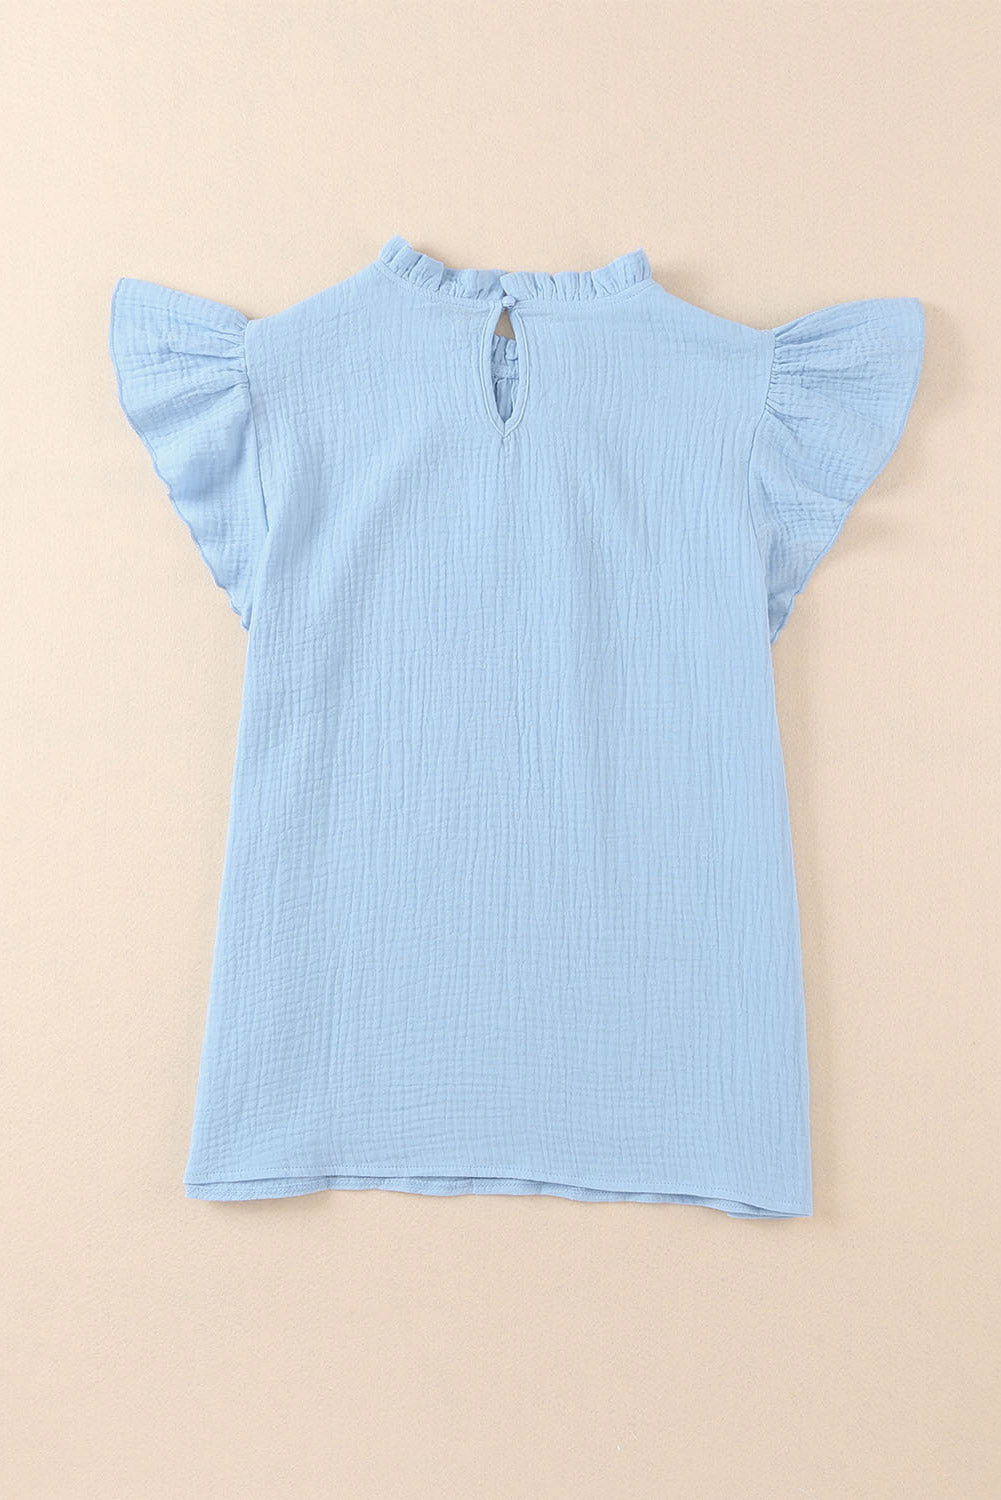 Himmelblaue, strukturierte Bluse mit Flatterärmeln und Rüschenkragen